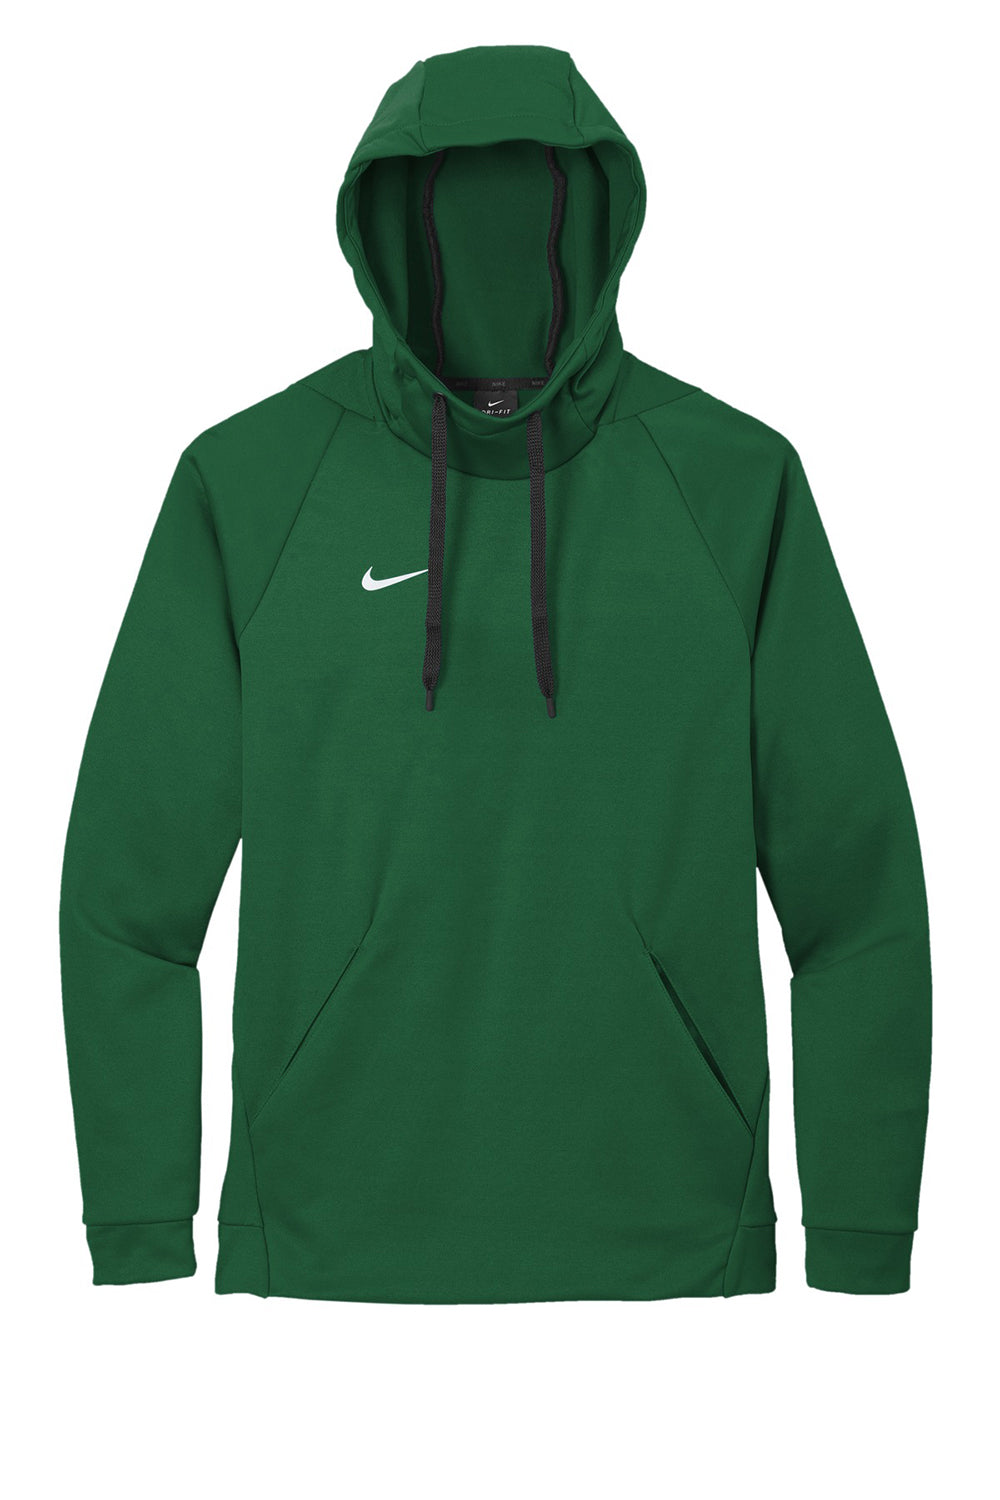 Nike CN9473 Mens Therma-Fit Moisture Wicking Fleece Hooded Sweatshirt Hoodie Team Dark Green Flat Front